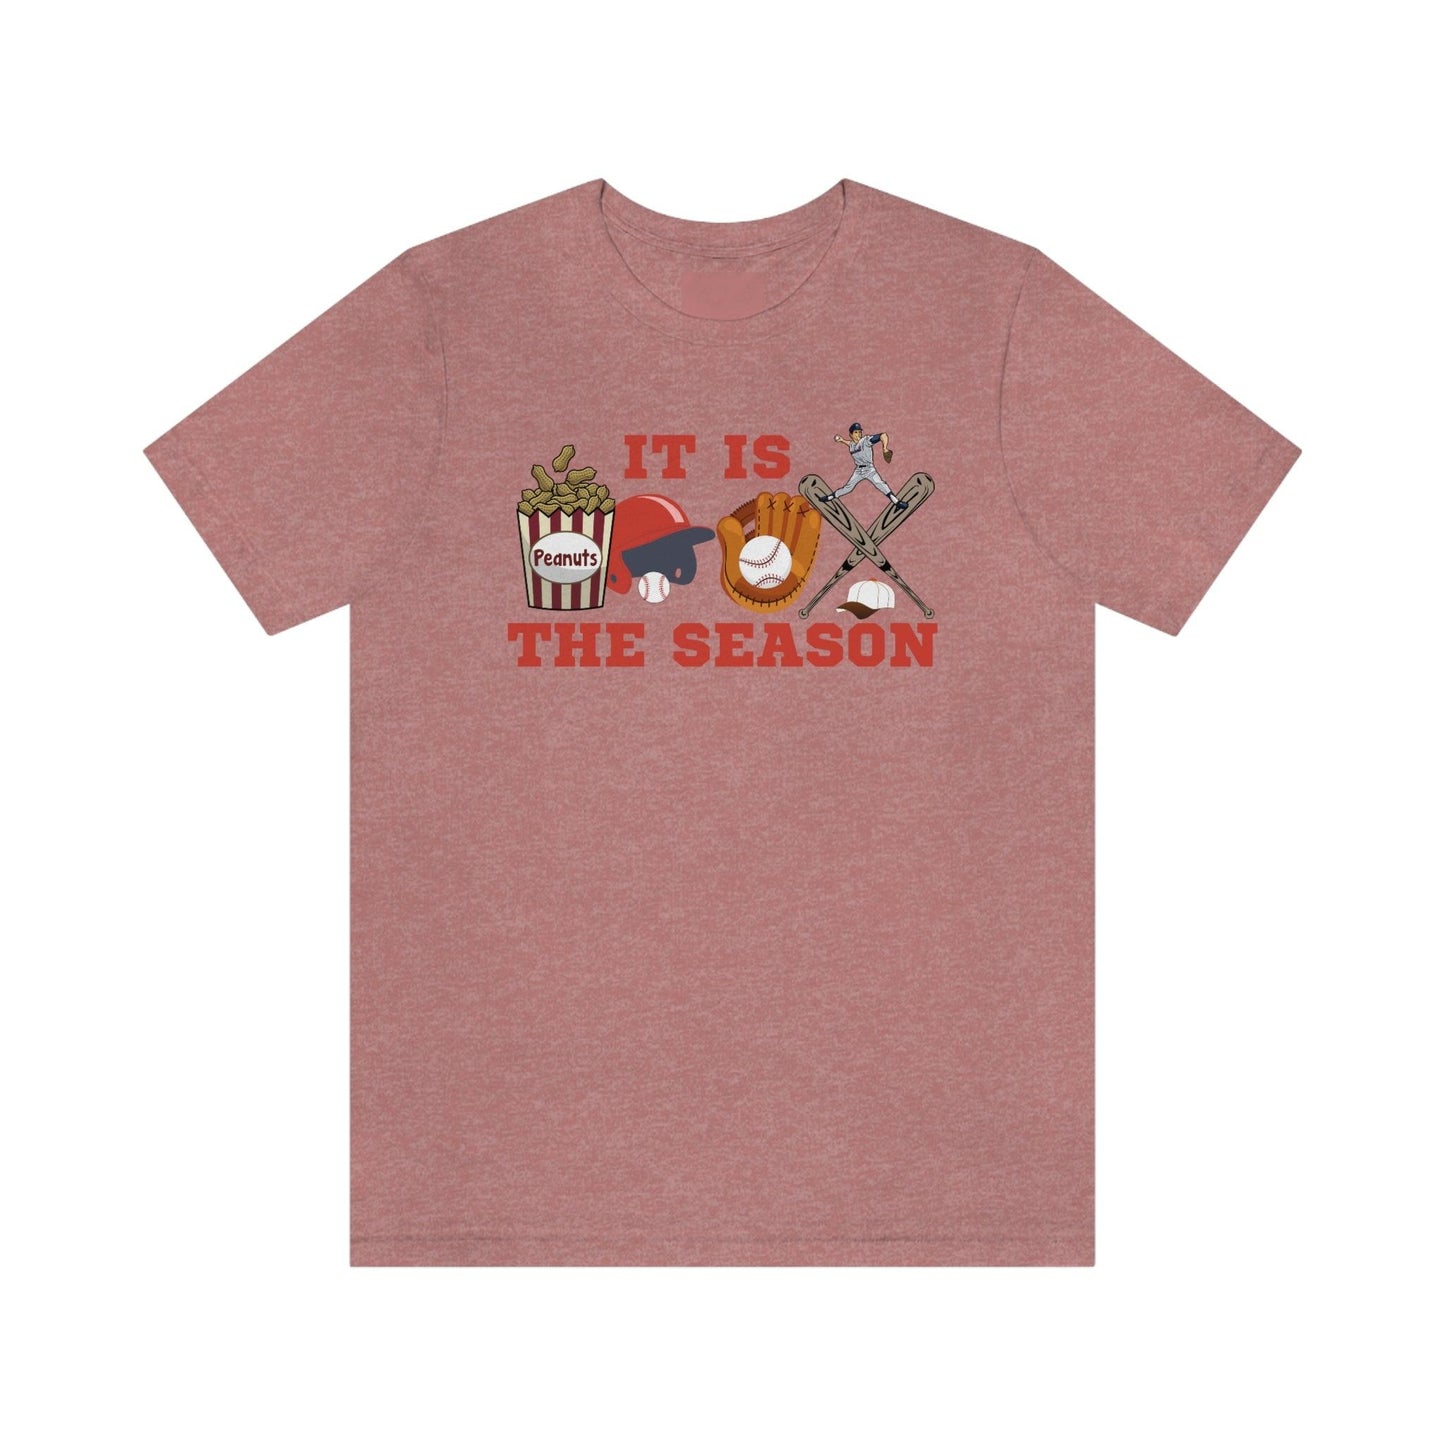 It is the season Baseball shirt baseball tee baseball tshirt - Sport shirt Baseball Mom shirt Baseball Mama shirt gift for him gameday shirt - Giftsmojo